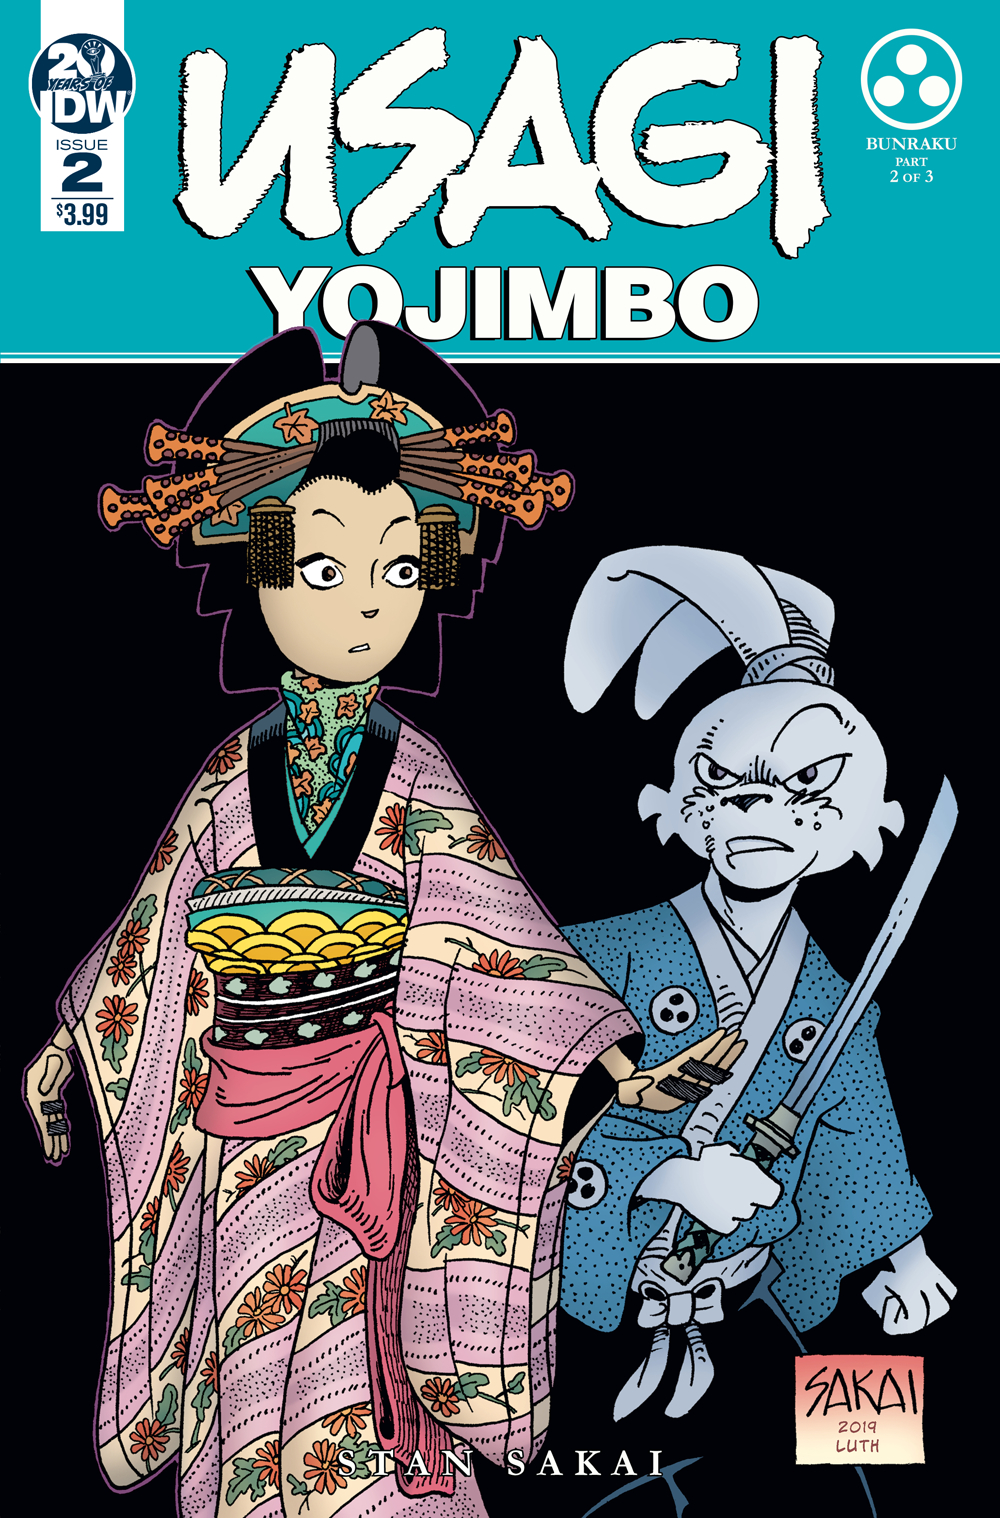 Usagi Yojimbo no. 2 (2019 Series)